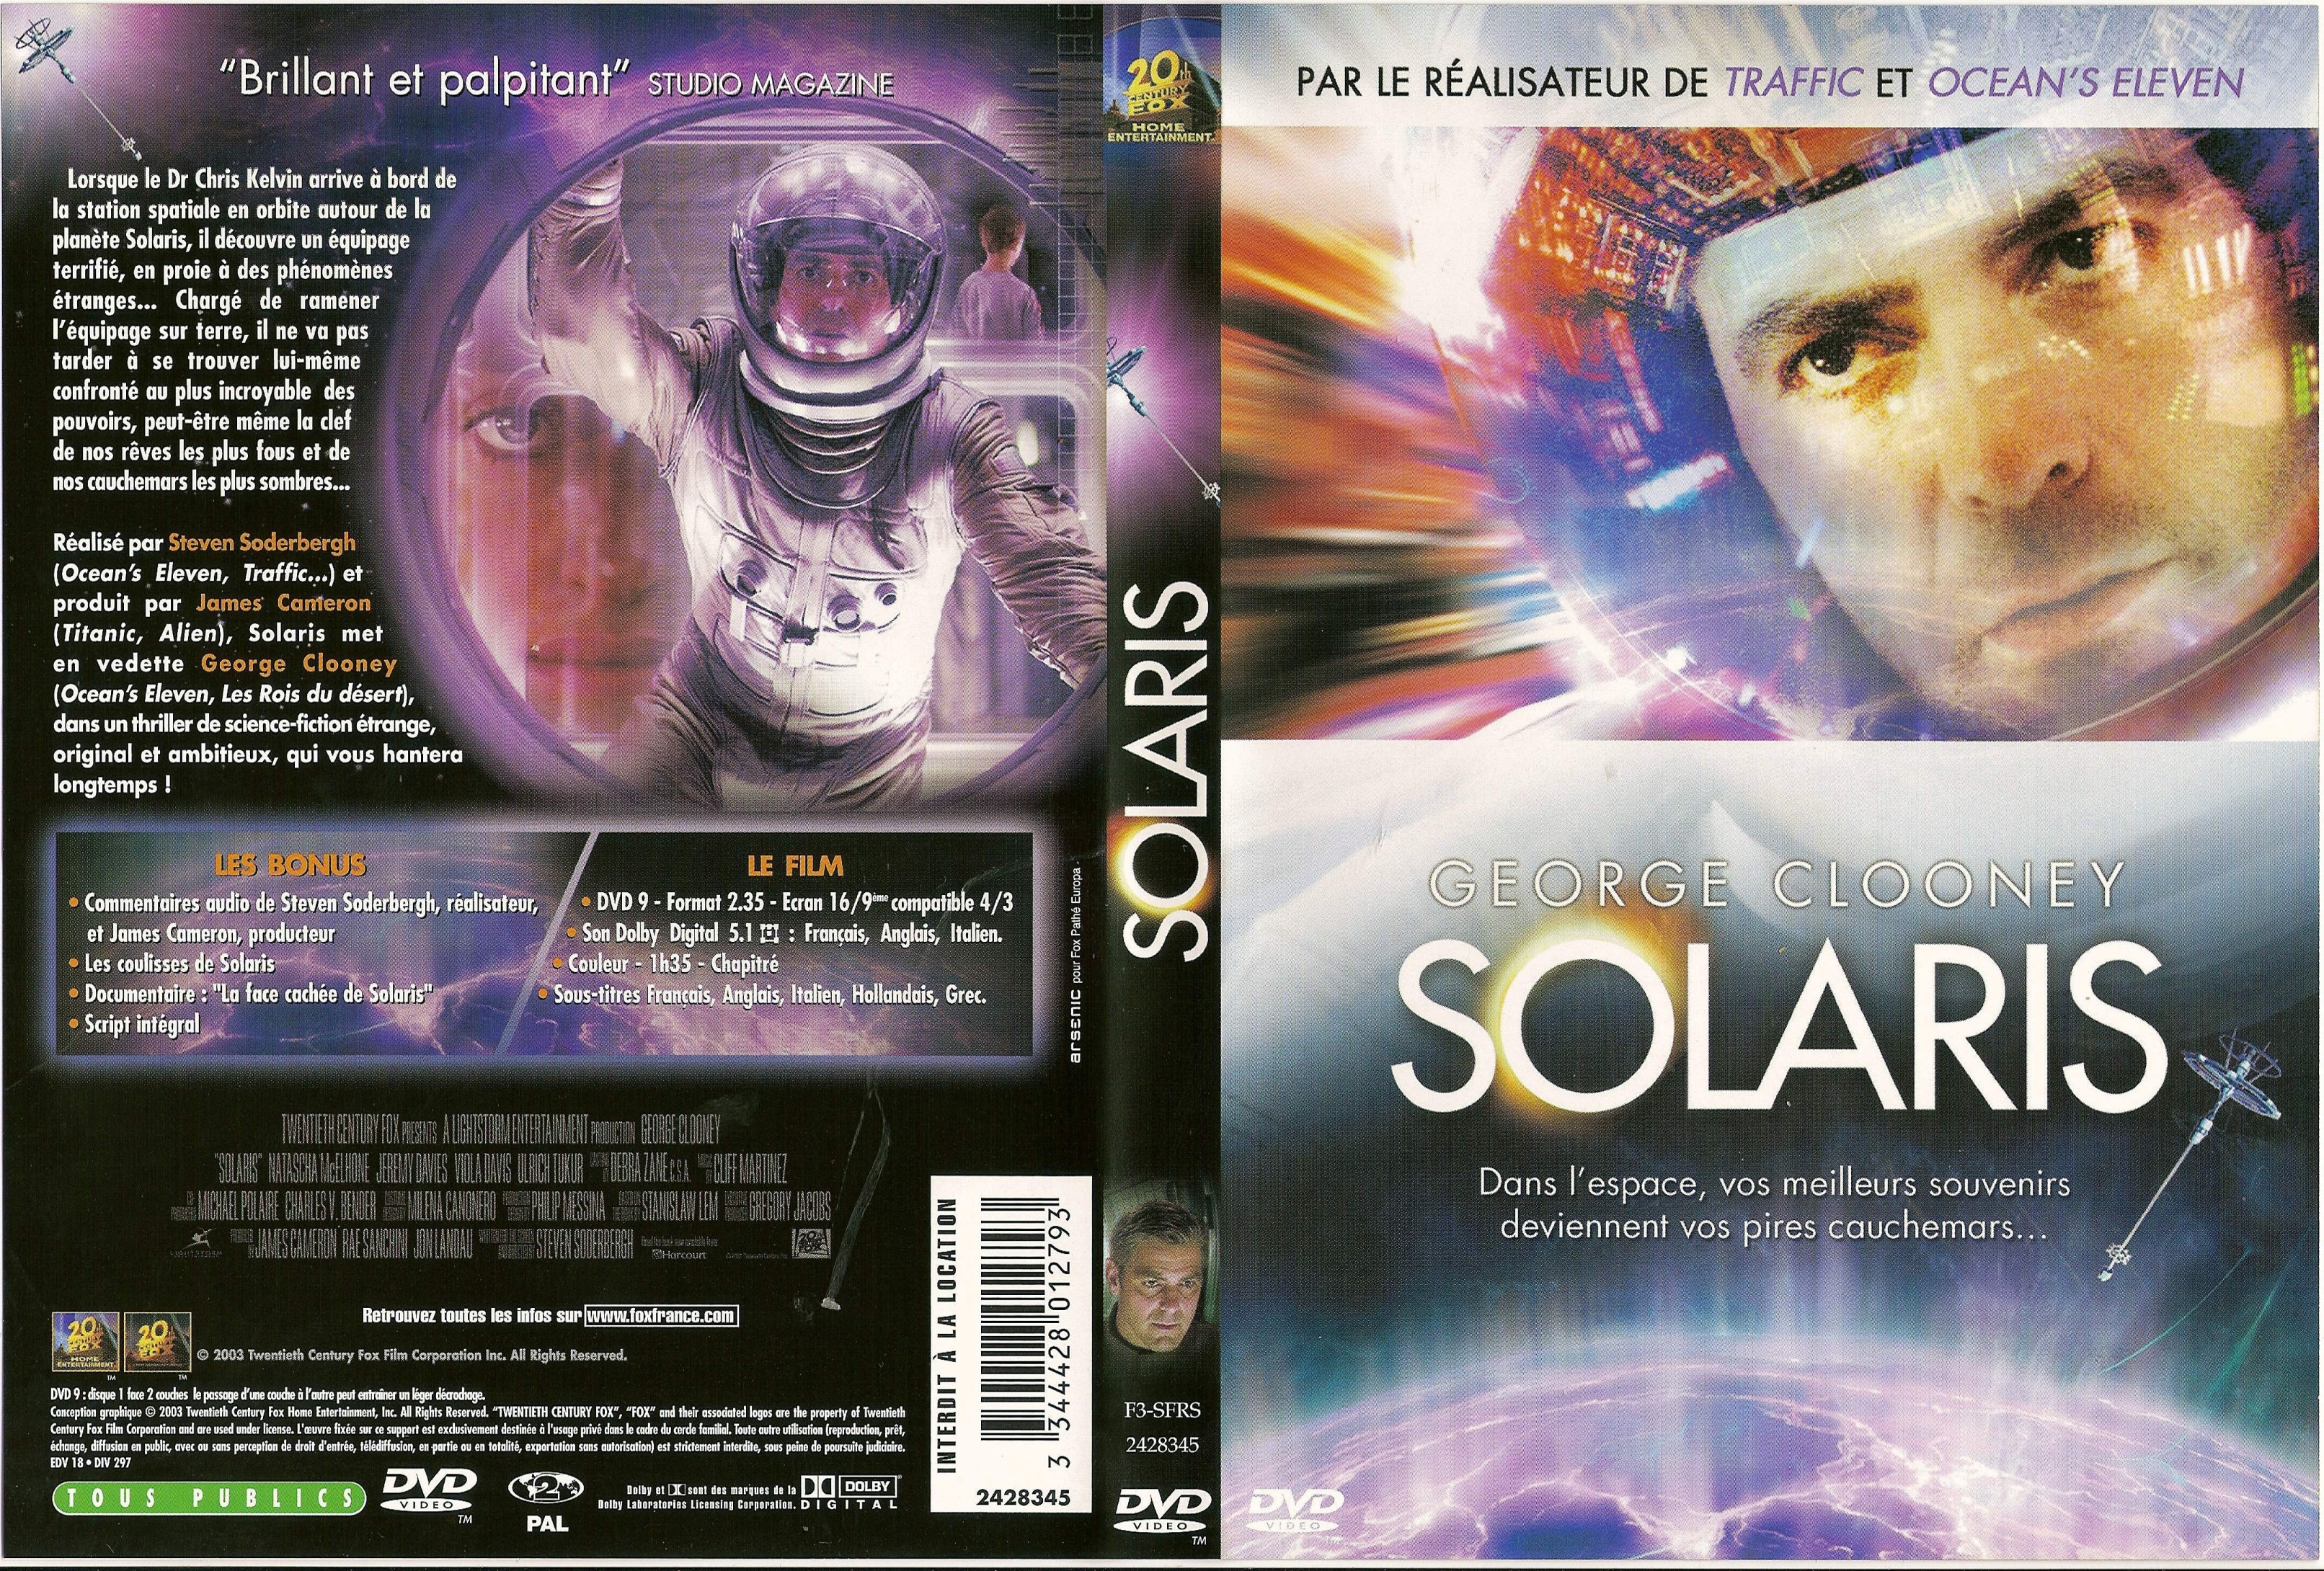 Jaquette DVD Solaris